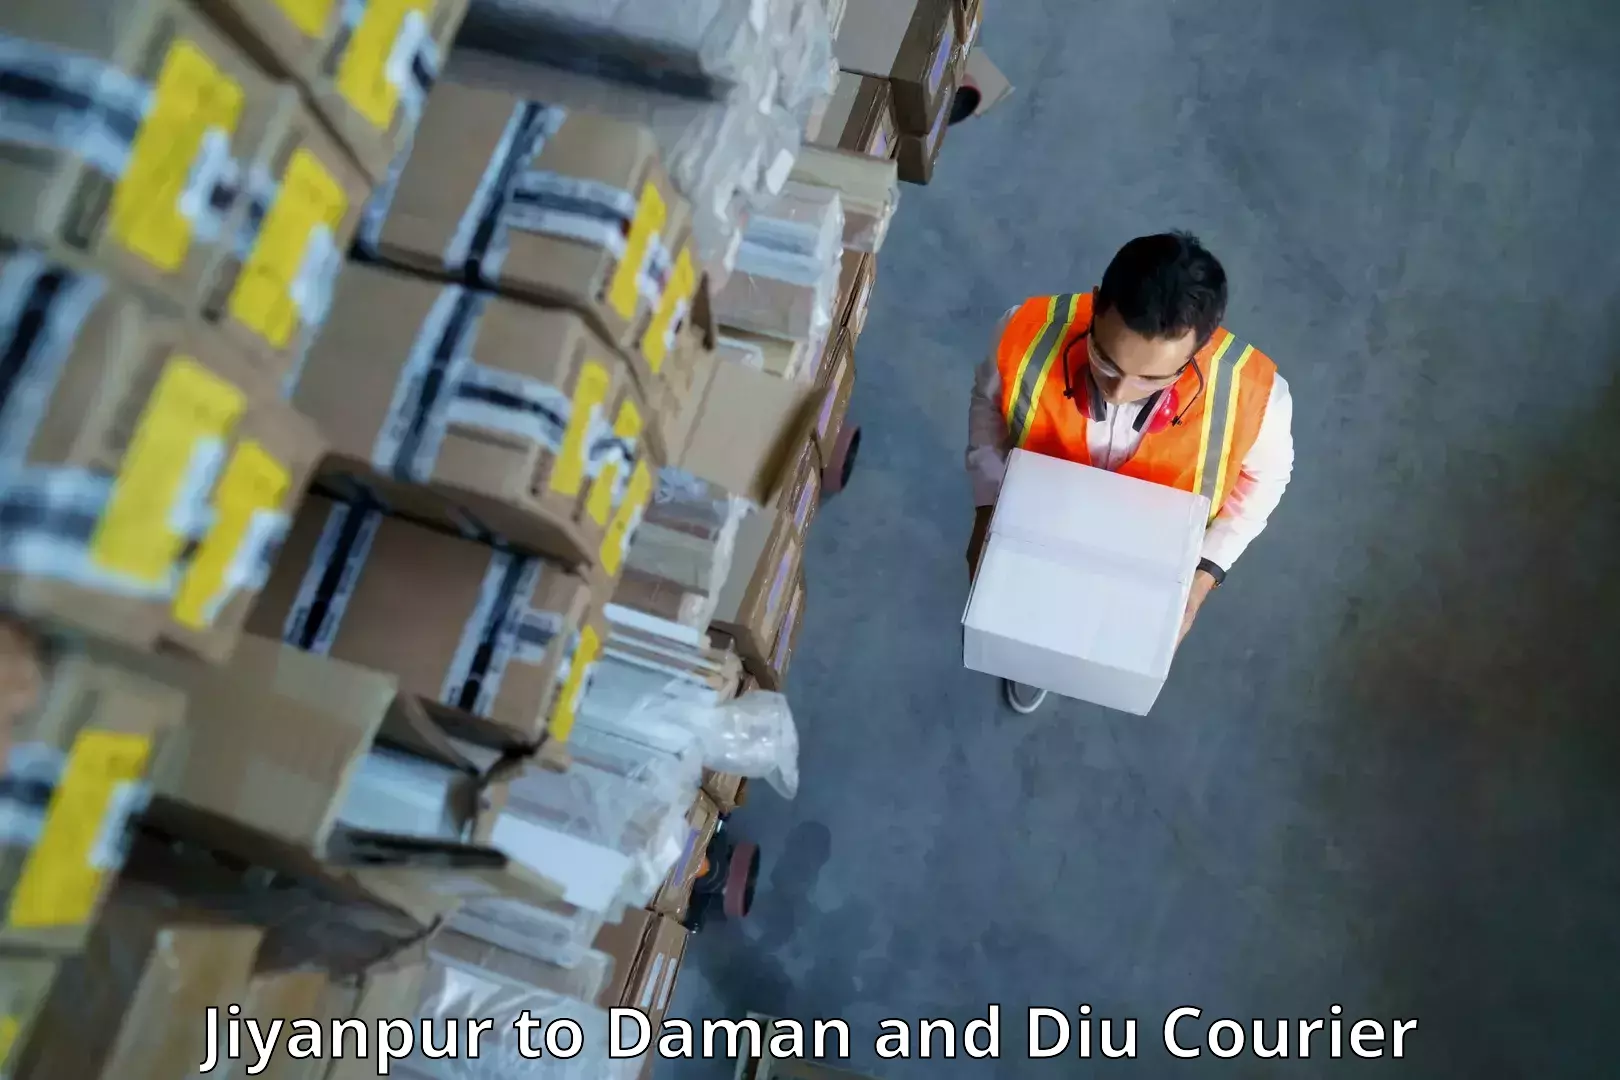 Secure packaging Jiyanpur to Diu